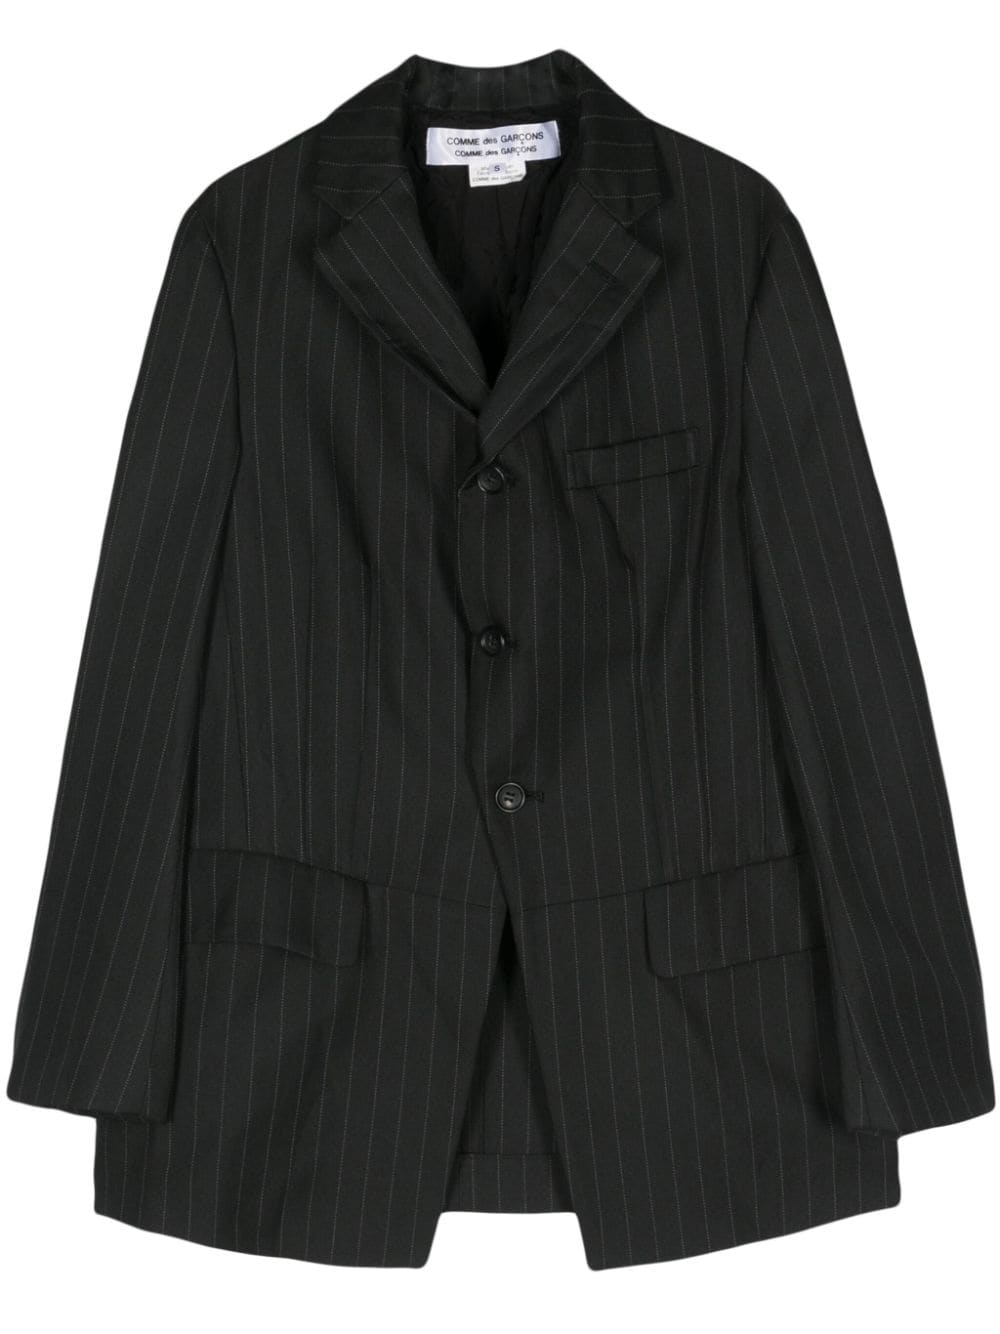 Áo khoác đen tay dài có hoạ tiết sọc nhỏ và ve áo lật